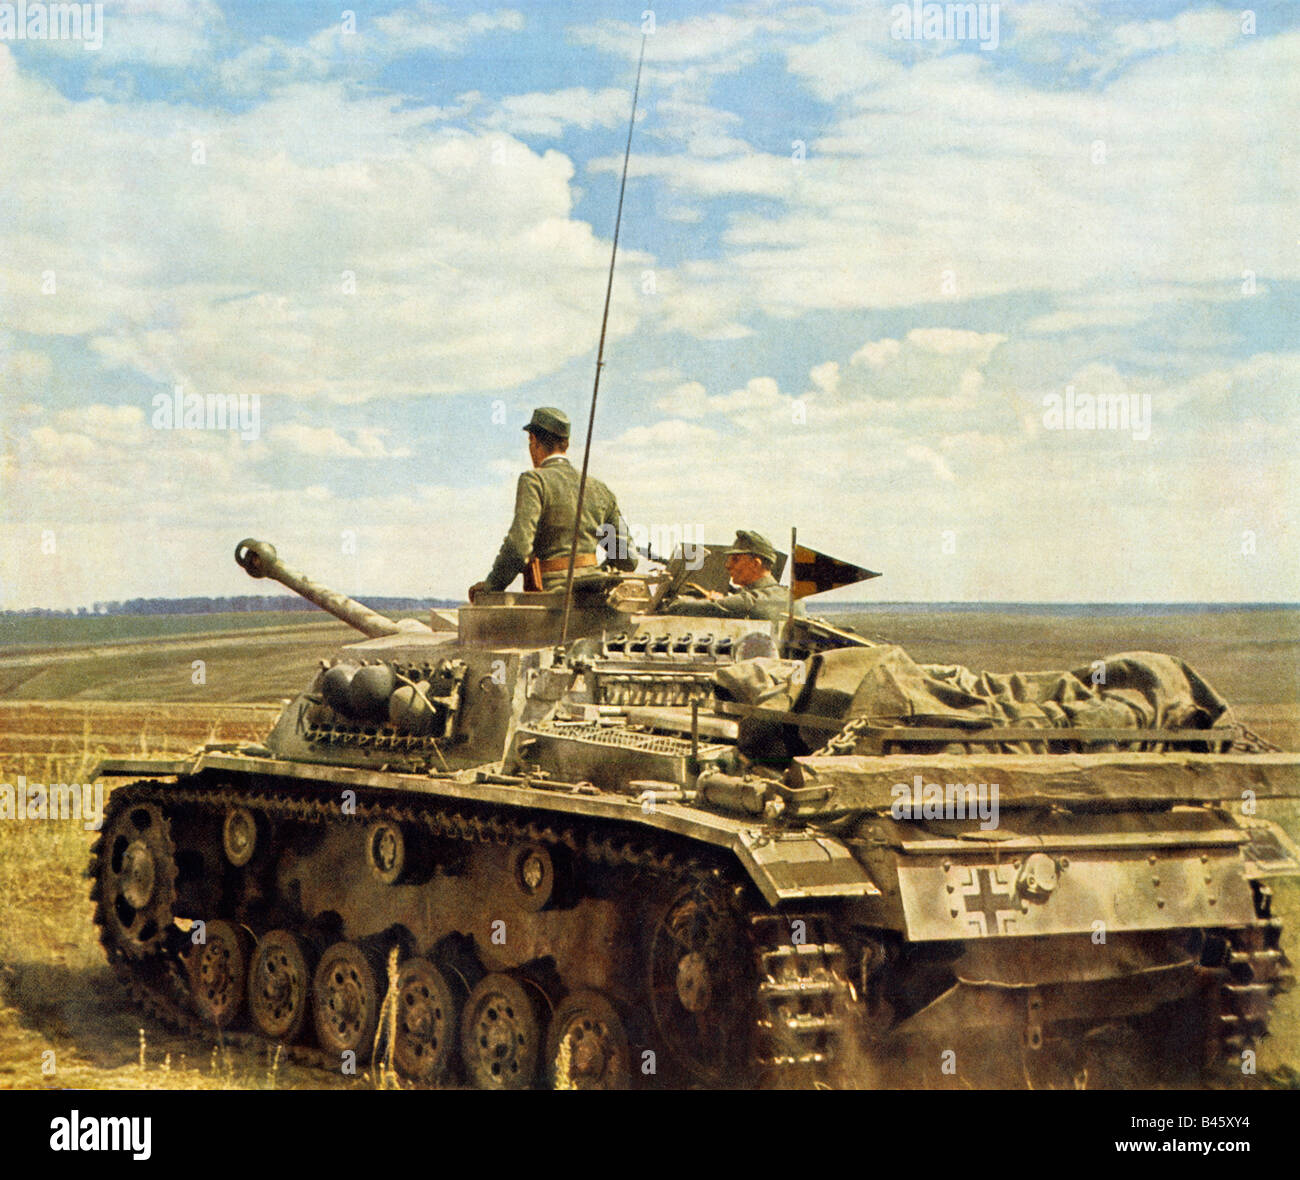 Un Reconnoiters Panzer Wehrmacht tank commander regarde autour de lui sur le front de l'Est DURANT LA SECONDE GUERRE MONDIALE Au début de la campagne de Russie Banque D'Images